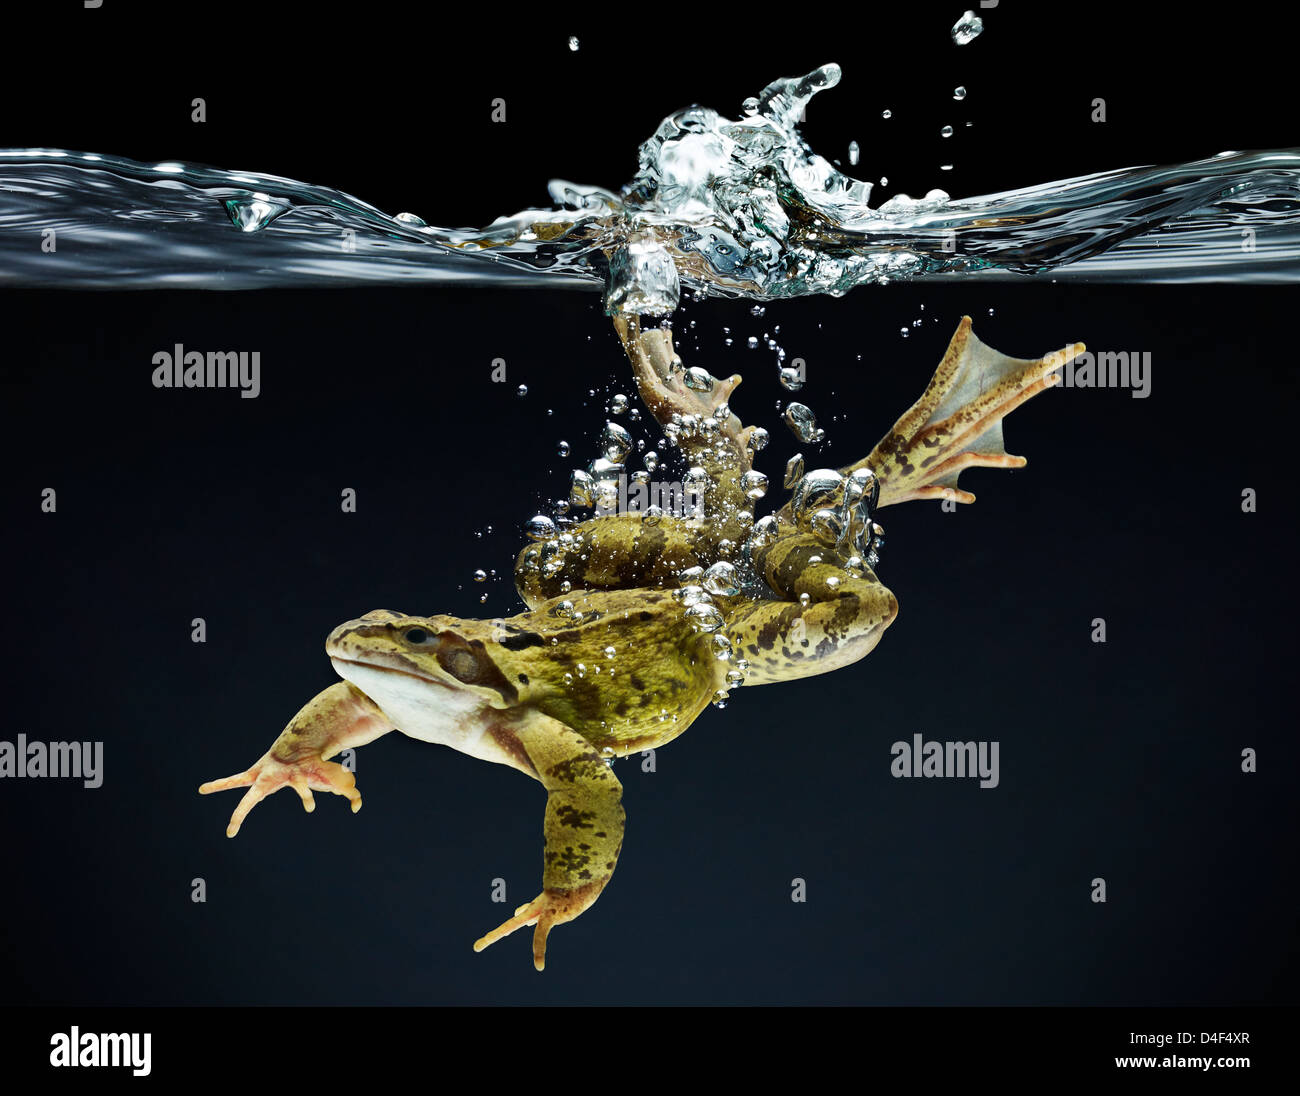 Frog swimming underwater Stock Photo